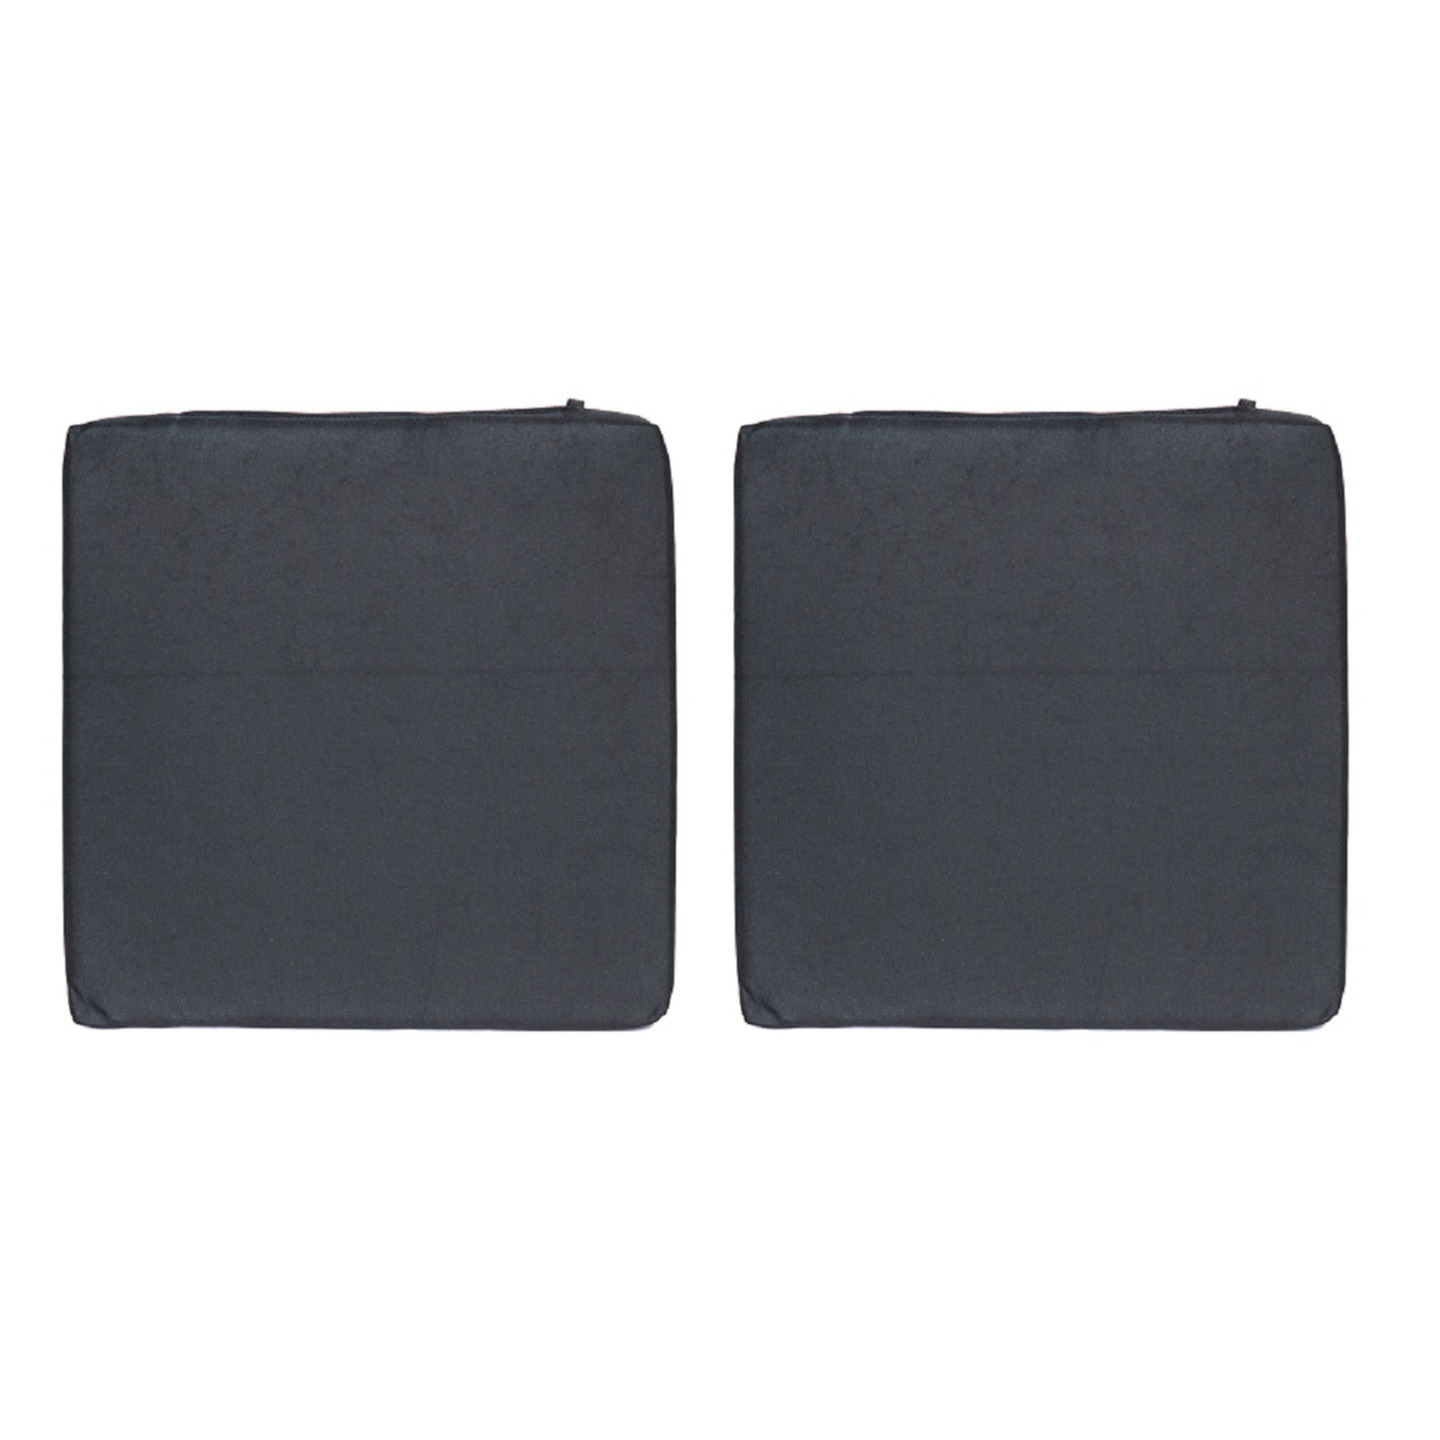 8x stuks stoelkussens voor binnen en buiten in de kleur zwart 40 x 40 cm